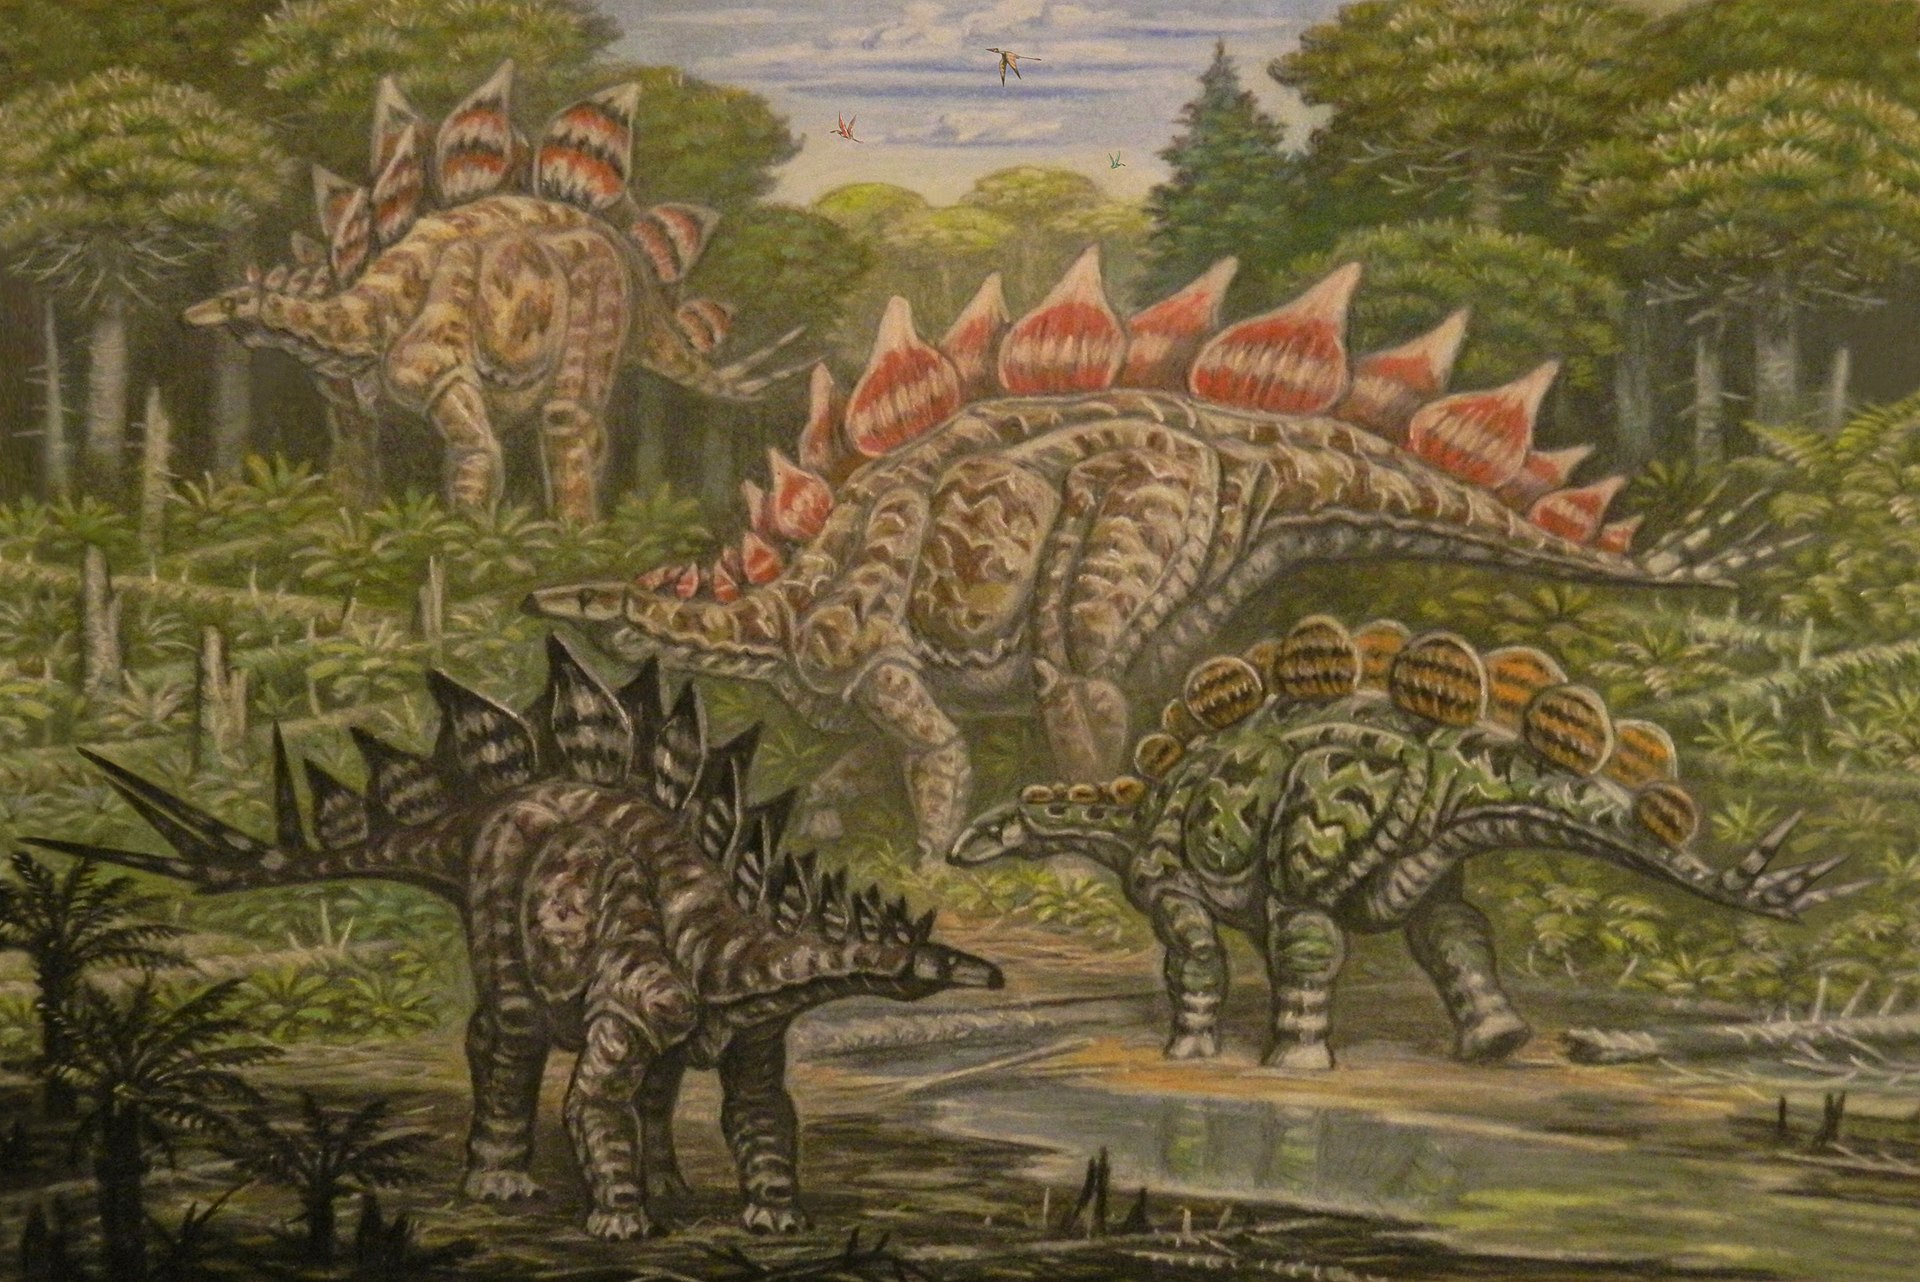 Severoameričtí stegosauridi známí ze sedimentů pozdně jurského souvrství Morrison. Kromě dvou druhů stegosaura v pozadí (S. ungulatus a S. stenops) zde defilují také mírně menší rody Hesperosaurus a Alcovasaurus. Kredit: ABelov2014; Wikipedia (CC BY-